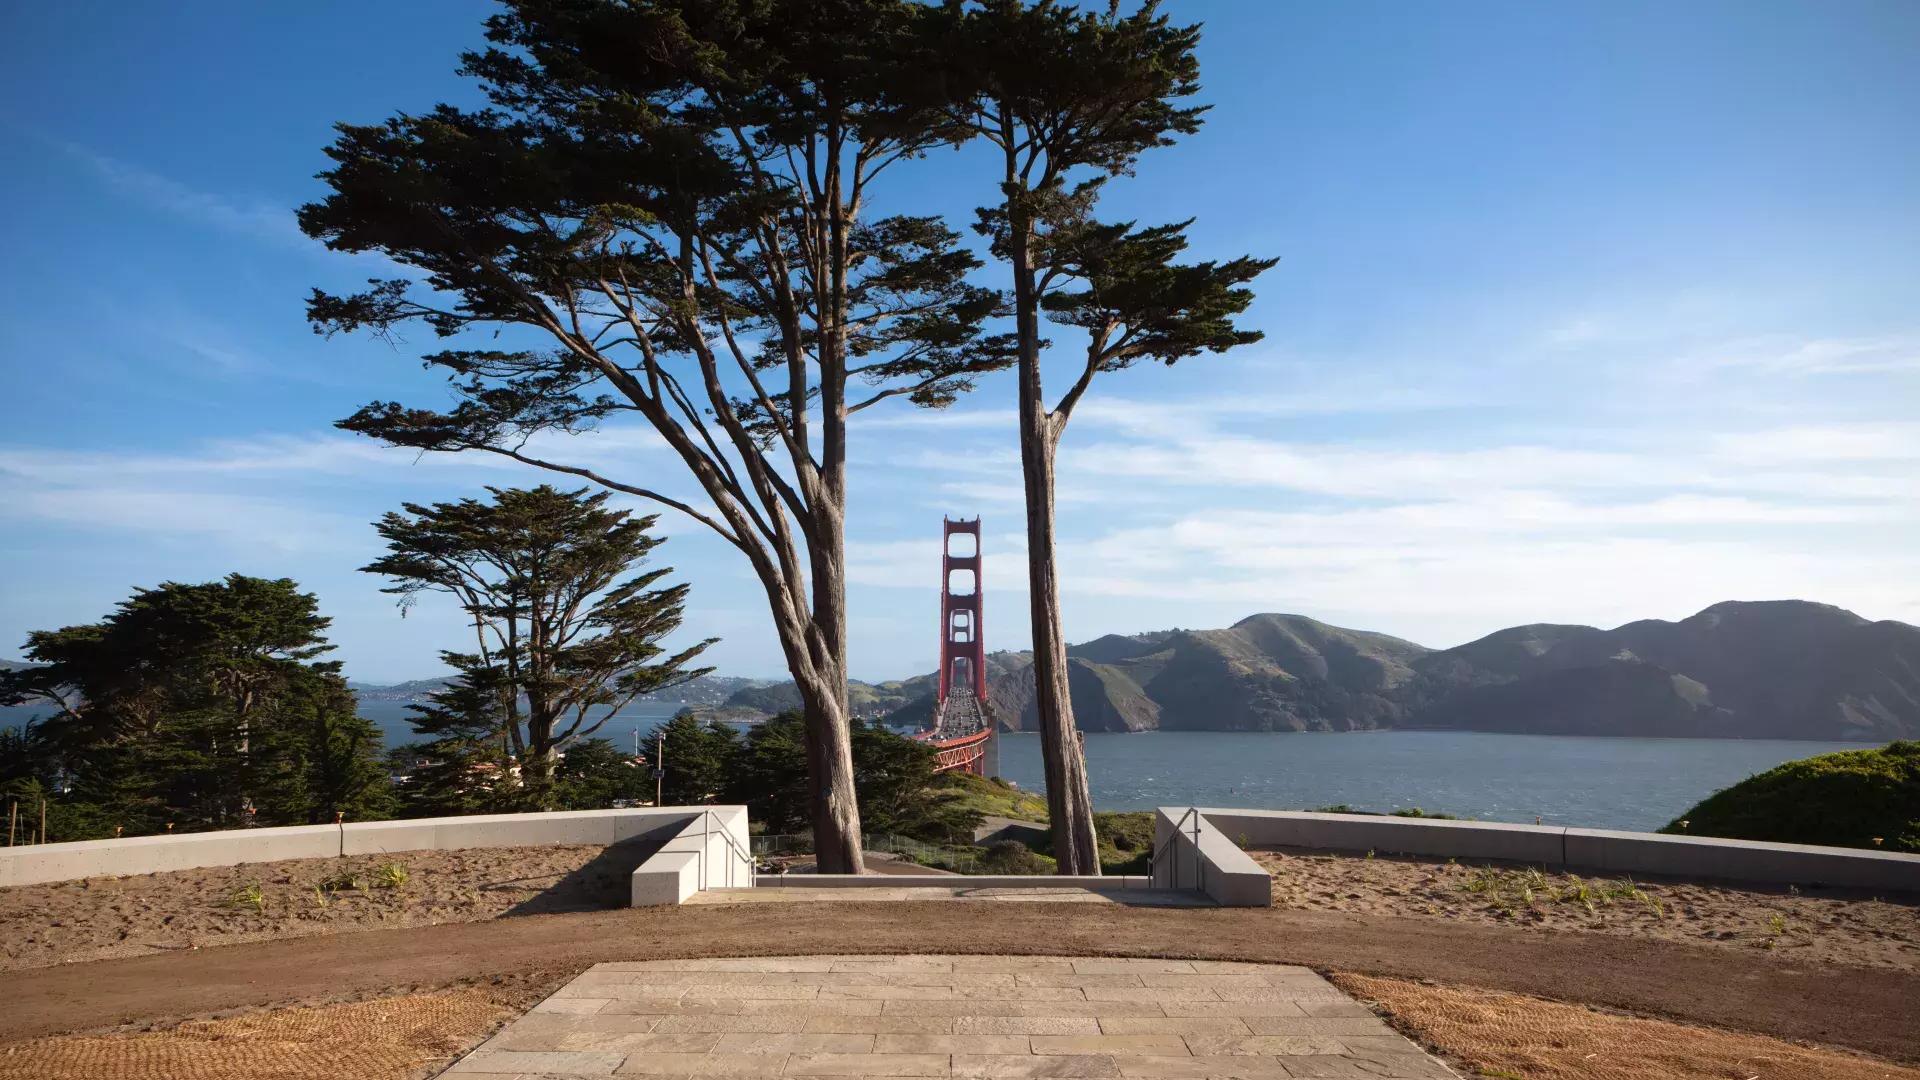 Presidio del Golden Gate Bridge